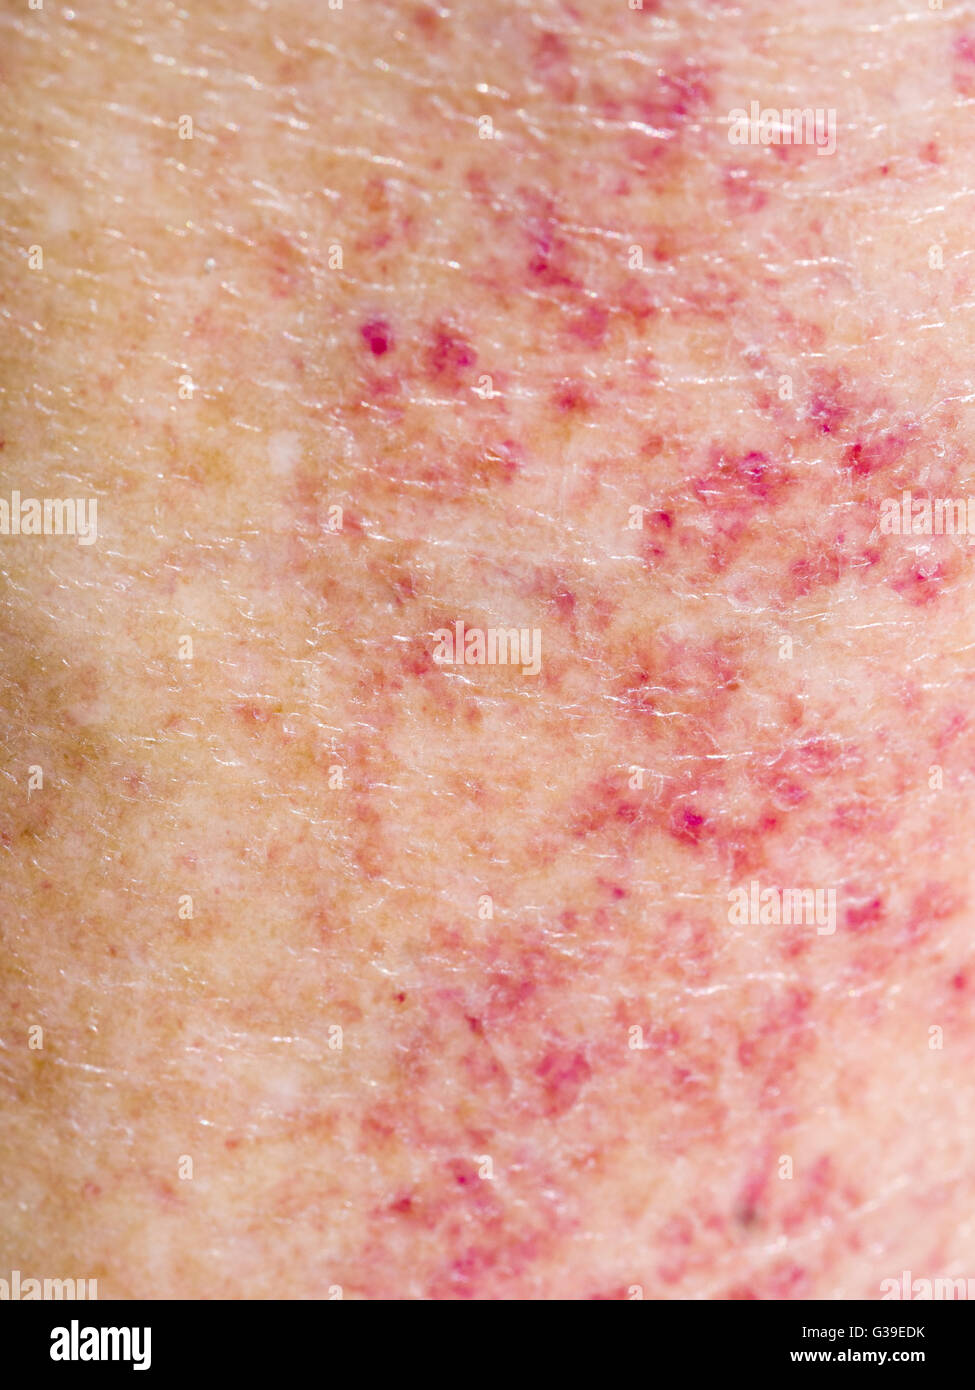 Eruzione cutanea rossa dalla combinazione di sole e farmaci. Allergia, sensibilità. Foto Stock